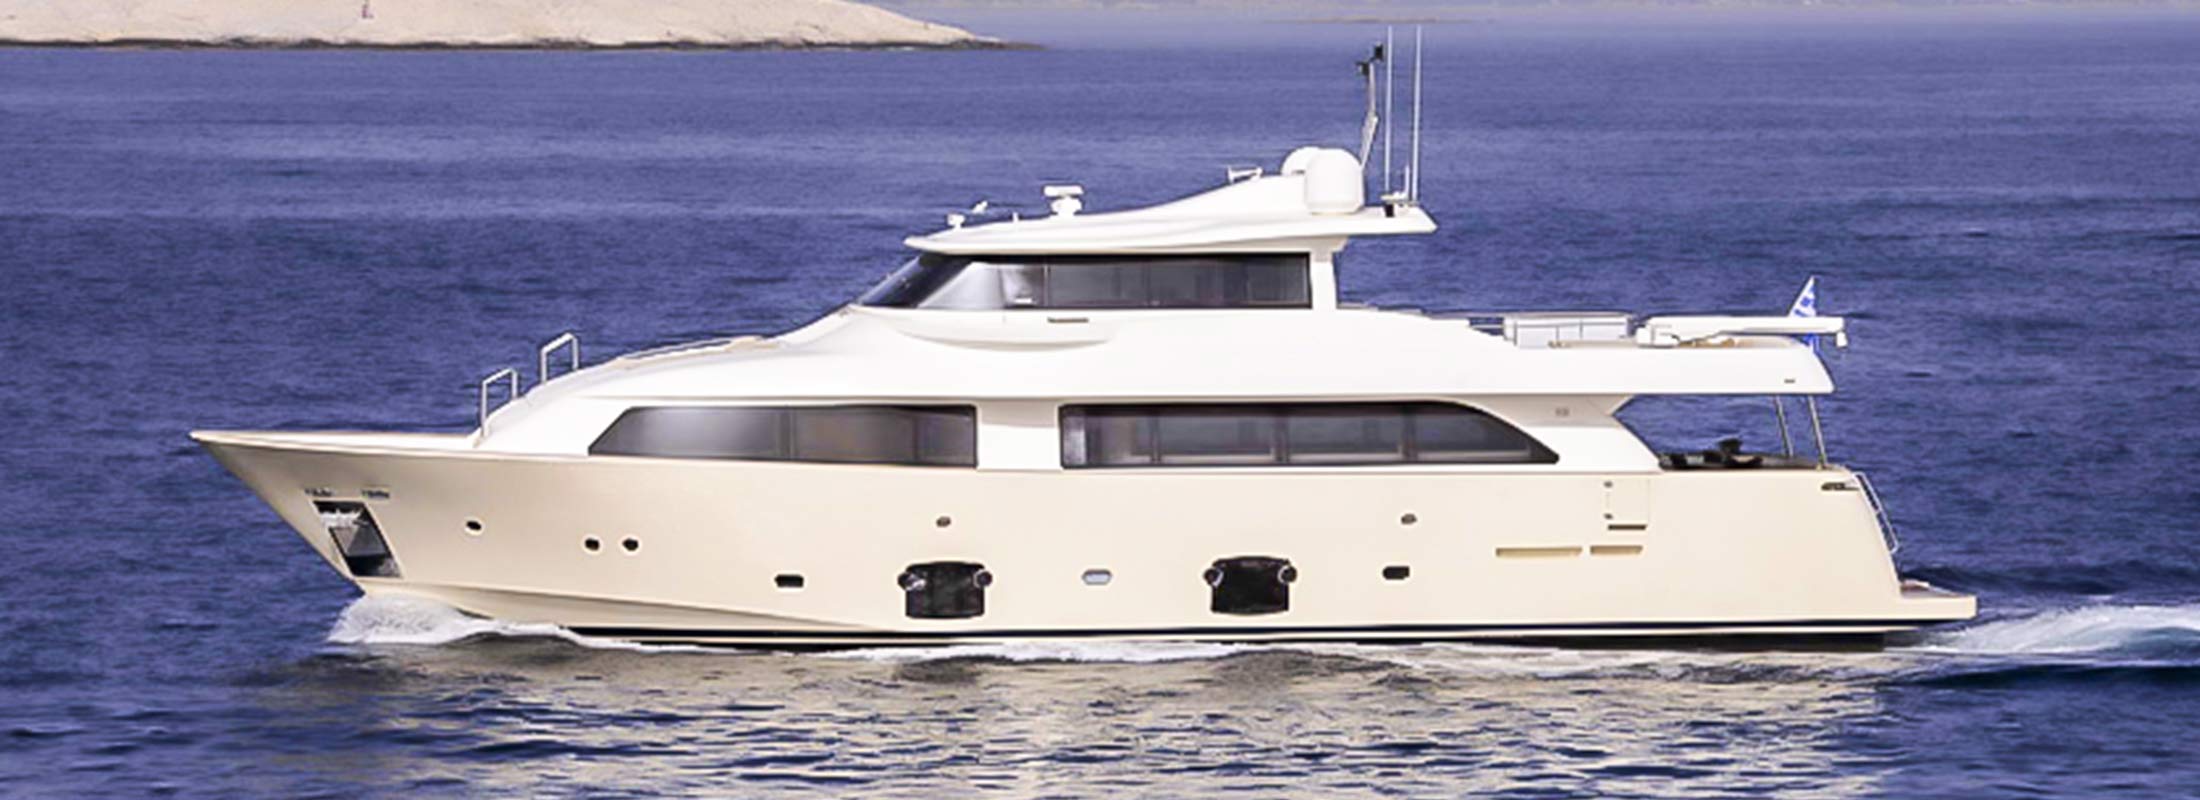 Dana Motor Yacht for Charter Mediterranean slider 1